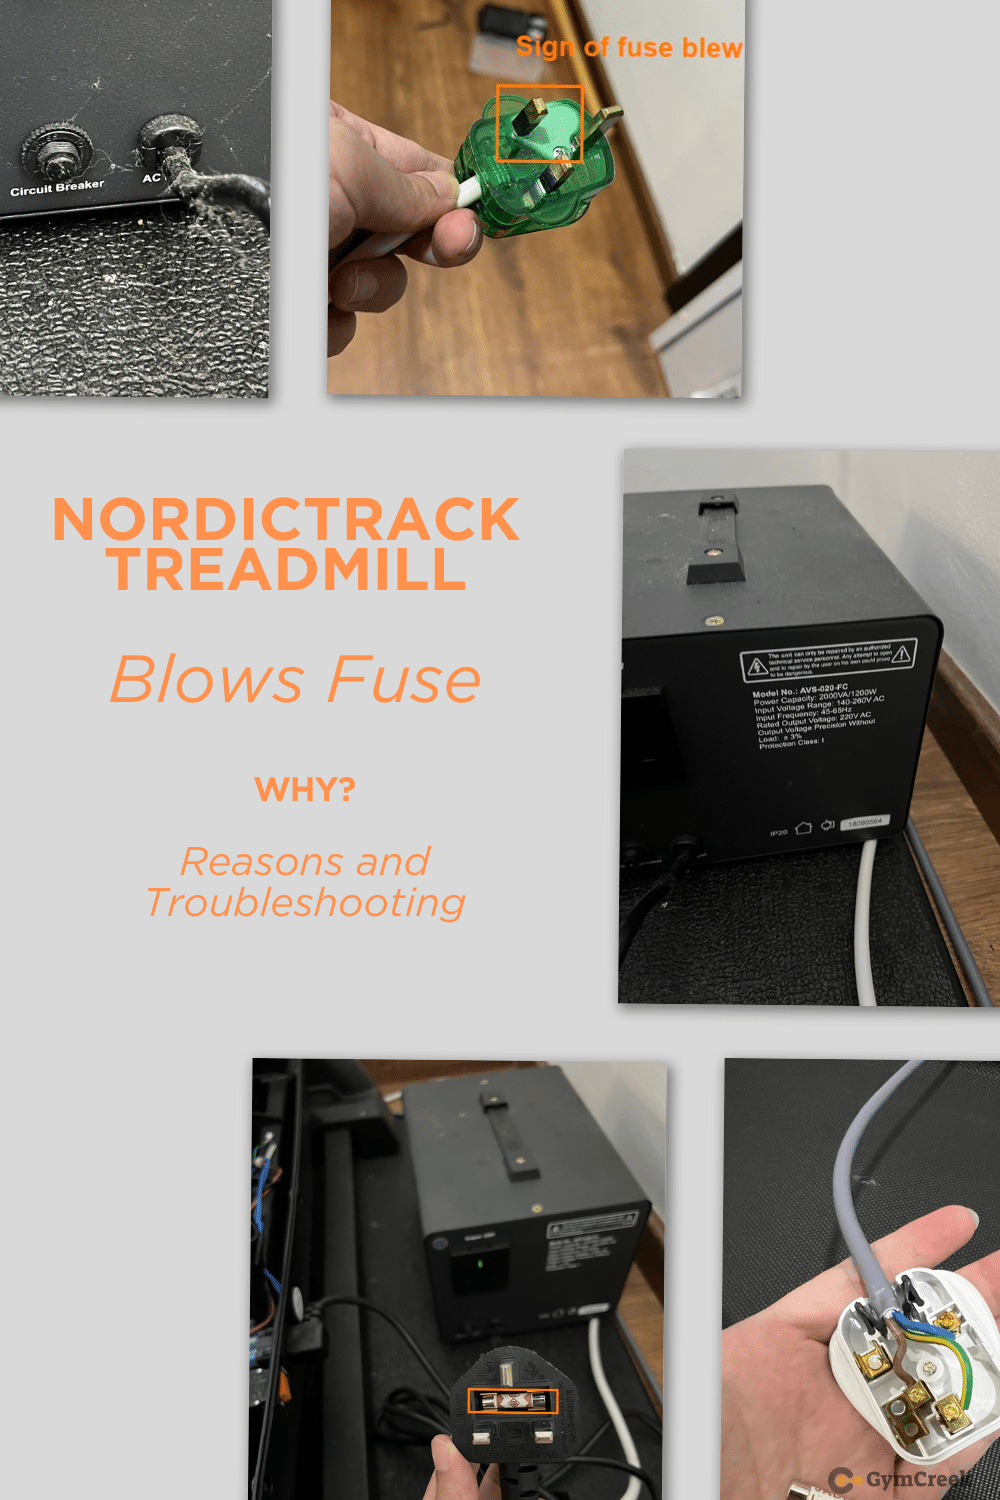 NordicTrack Treadmill Blows Fuse